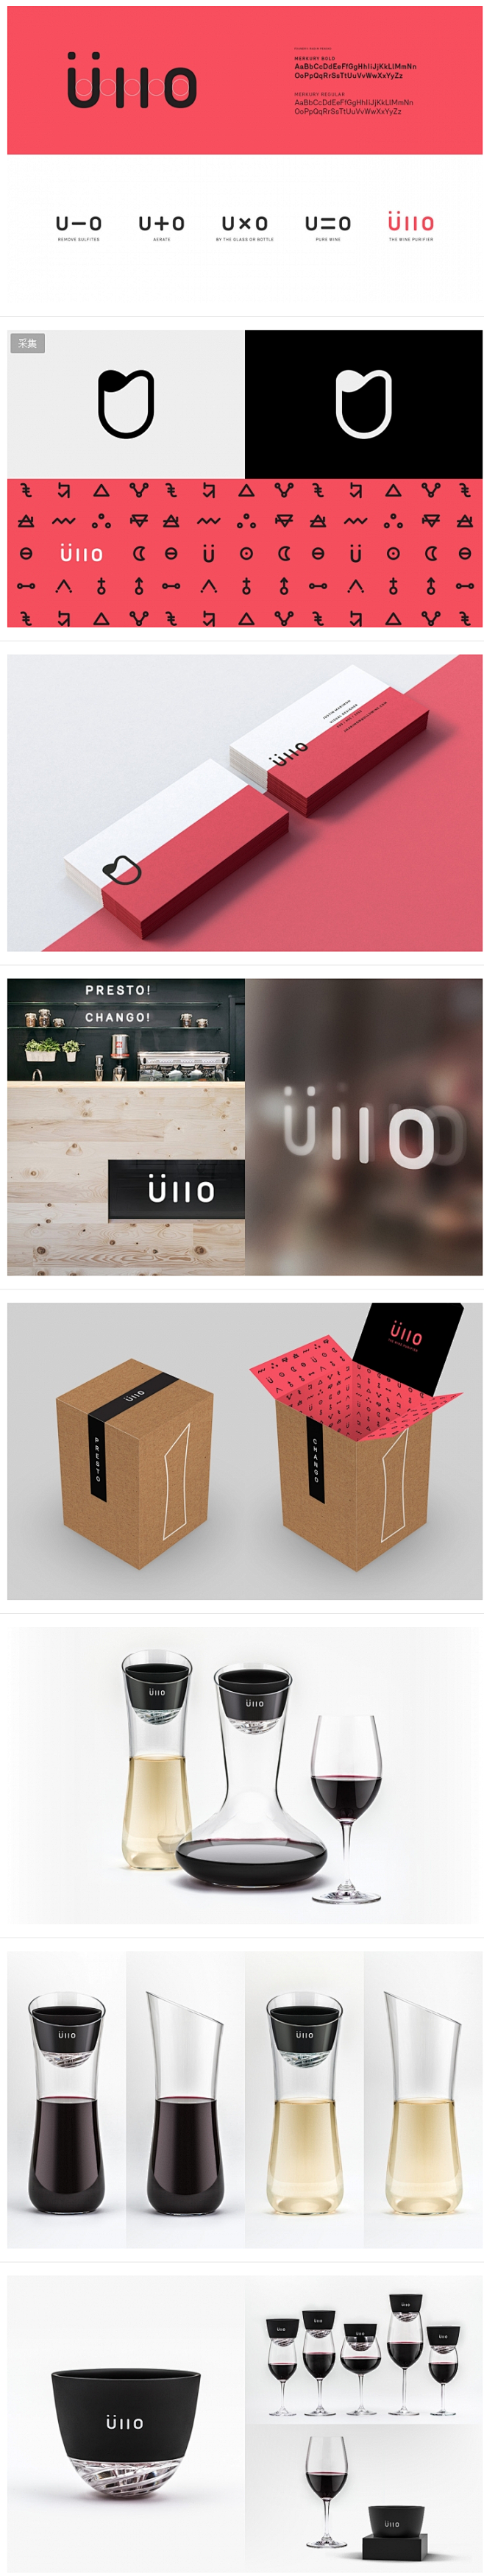 Ullo酒净化器品牌形象 设计圈 展示 ...